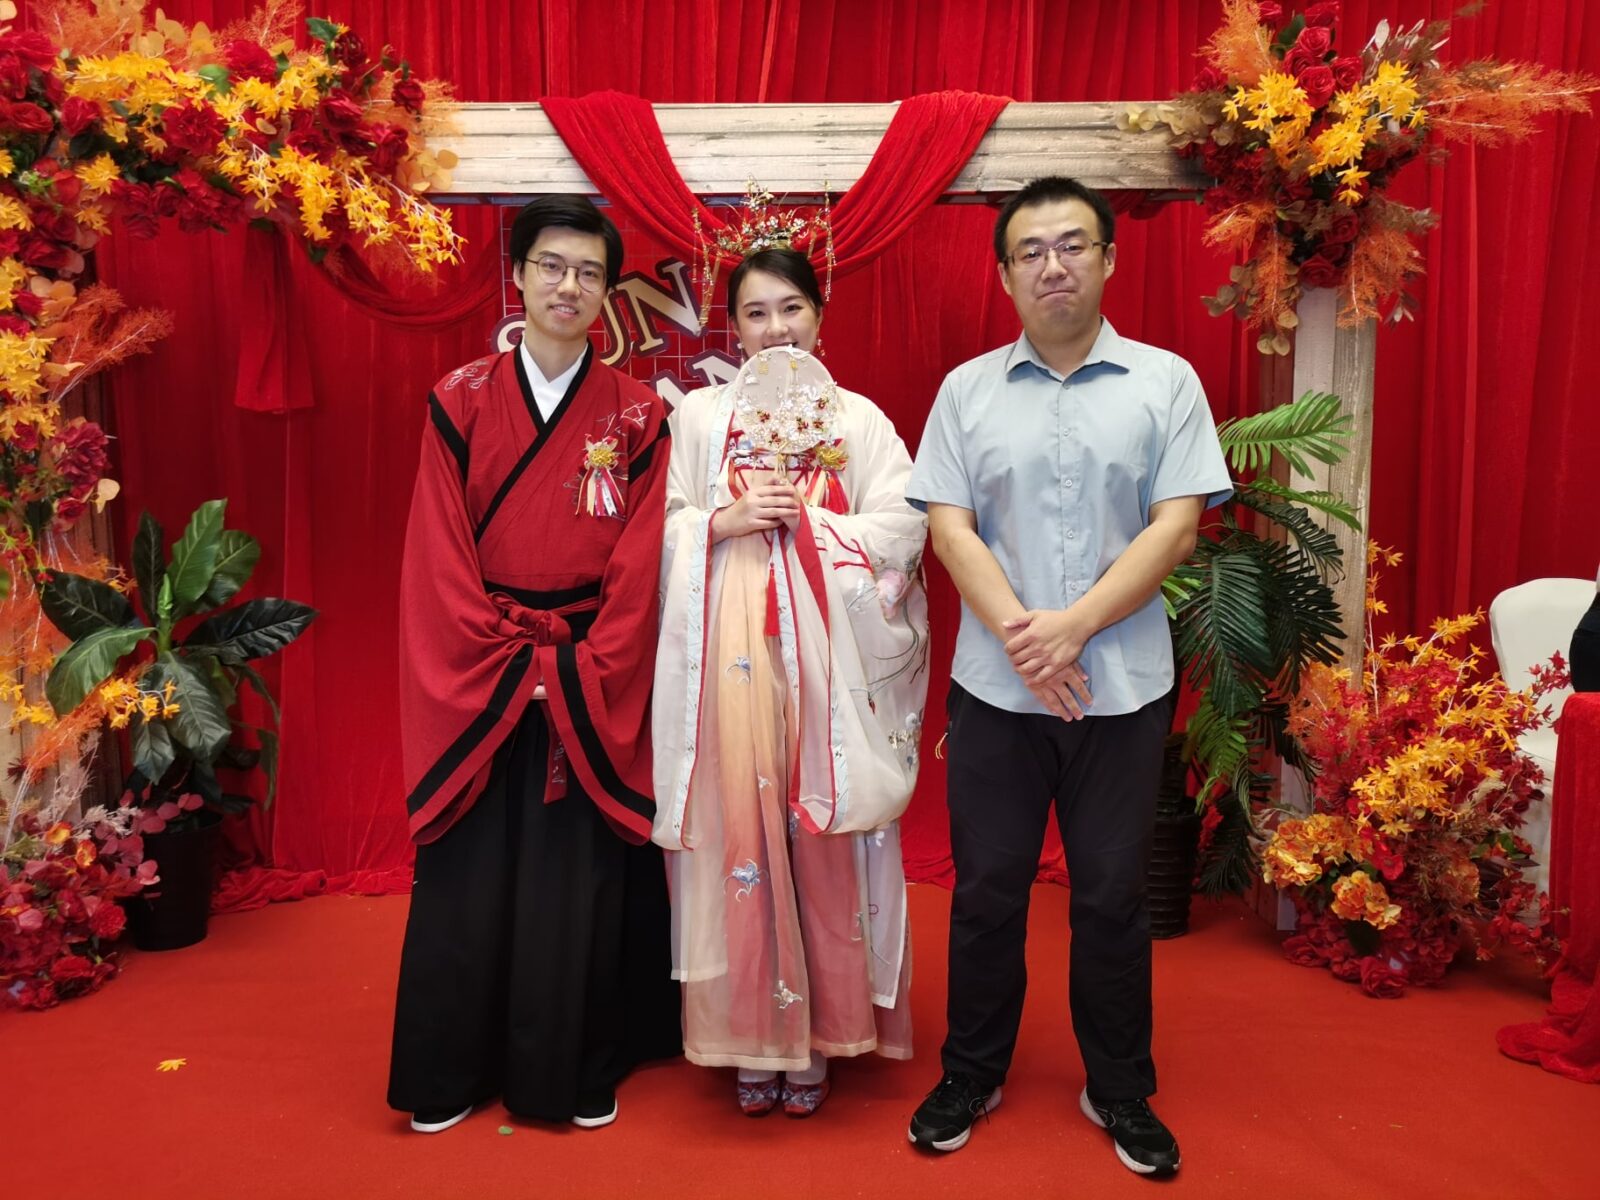 Matrimonio cinese